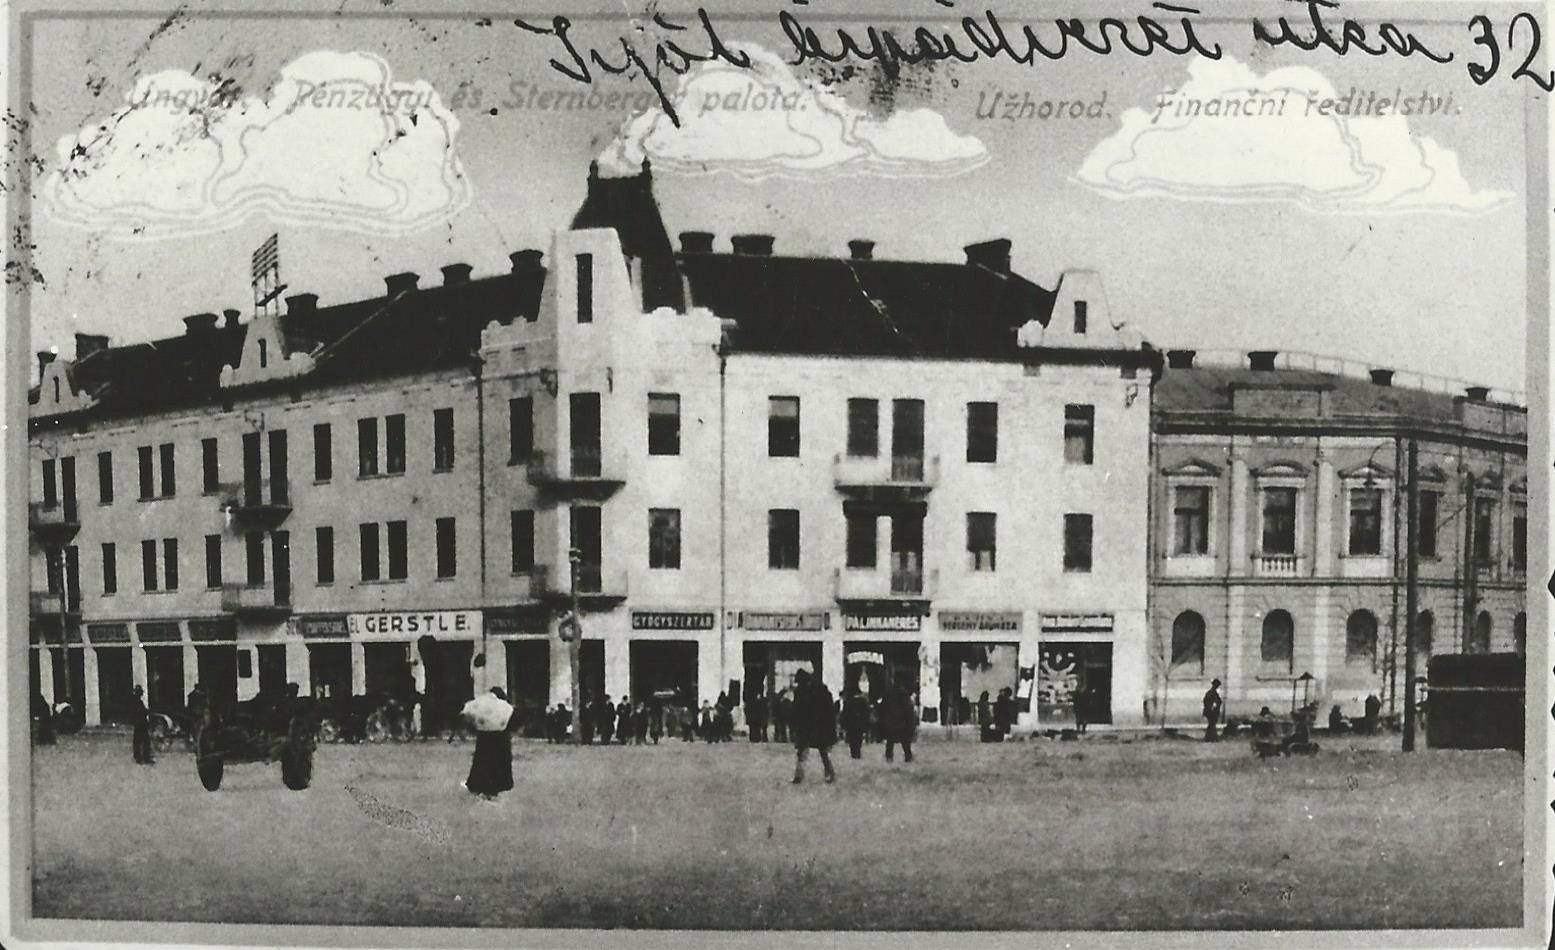 Як виглядали Фінансове управління і палац Штернбергерга на площі Л.Кошута (сучасна Ш. Петефі) в Ужгороді у 1910 році.